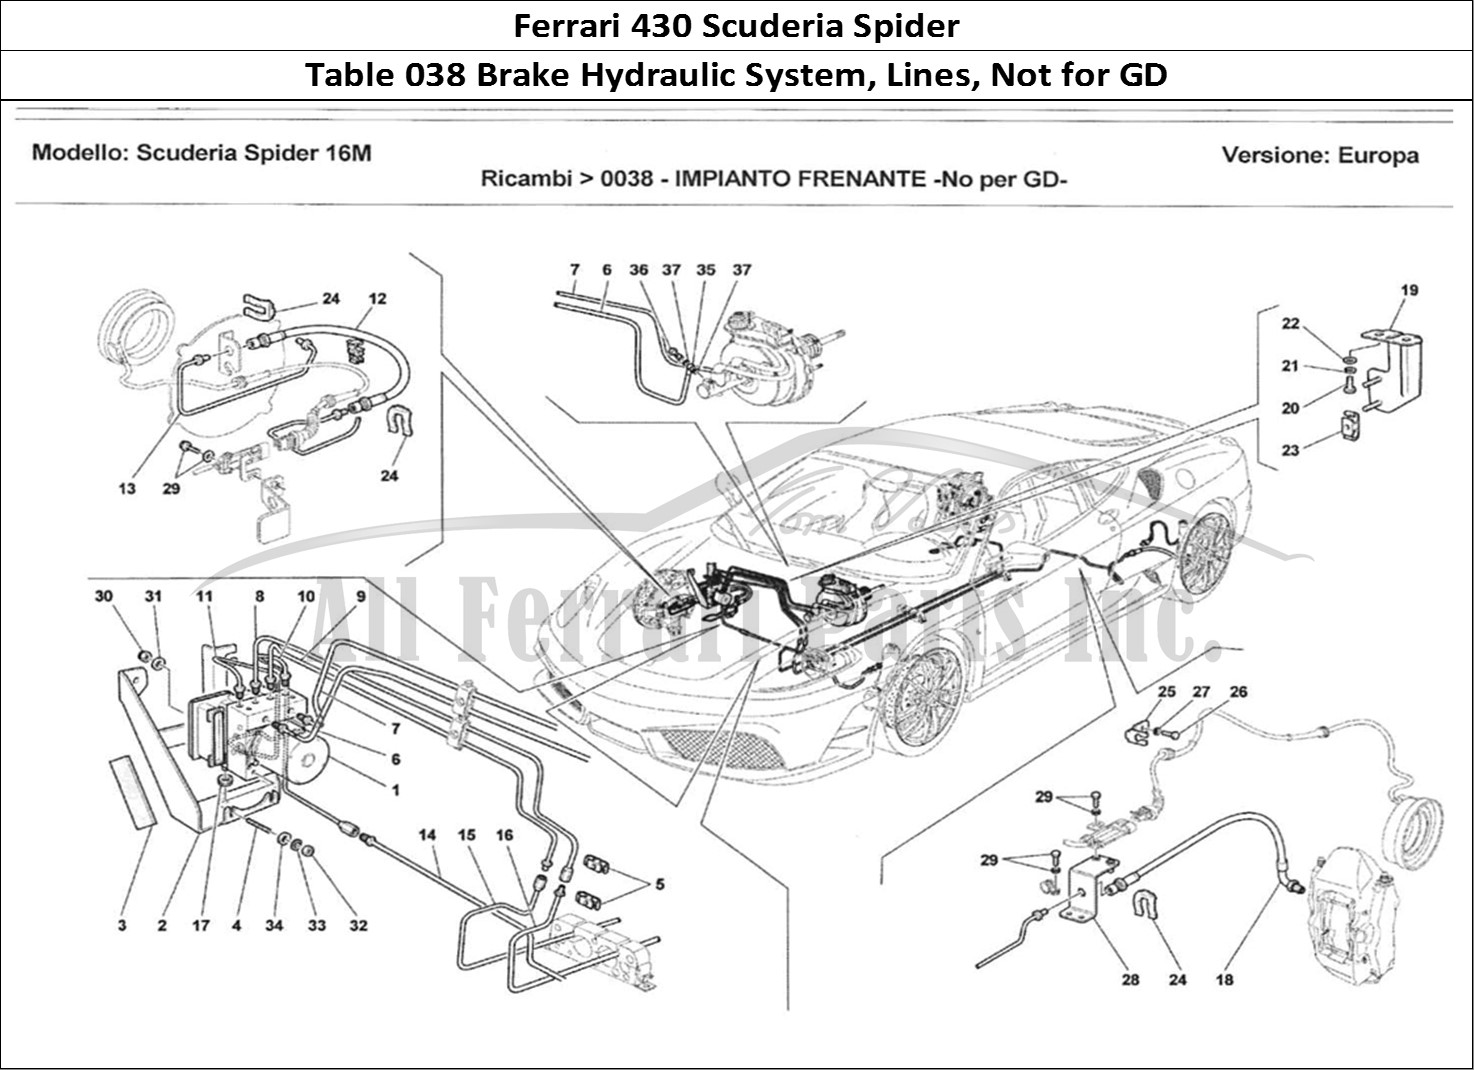 Ferrari Parts Ferrari 430 Scuderia Spider 16M Page 038 Impianto Frentate - No pe